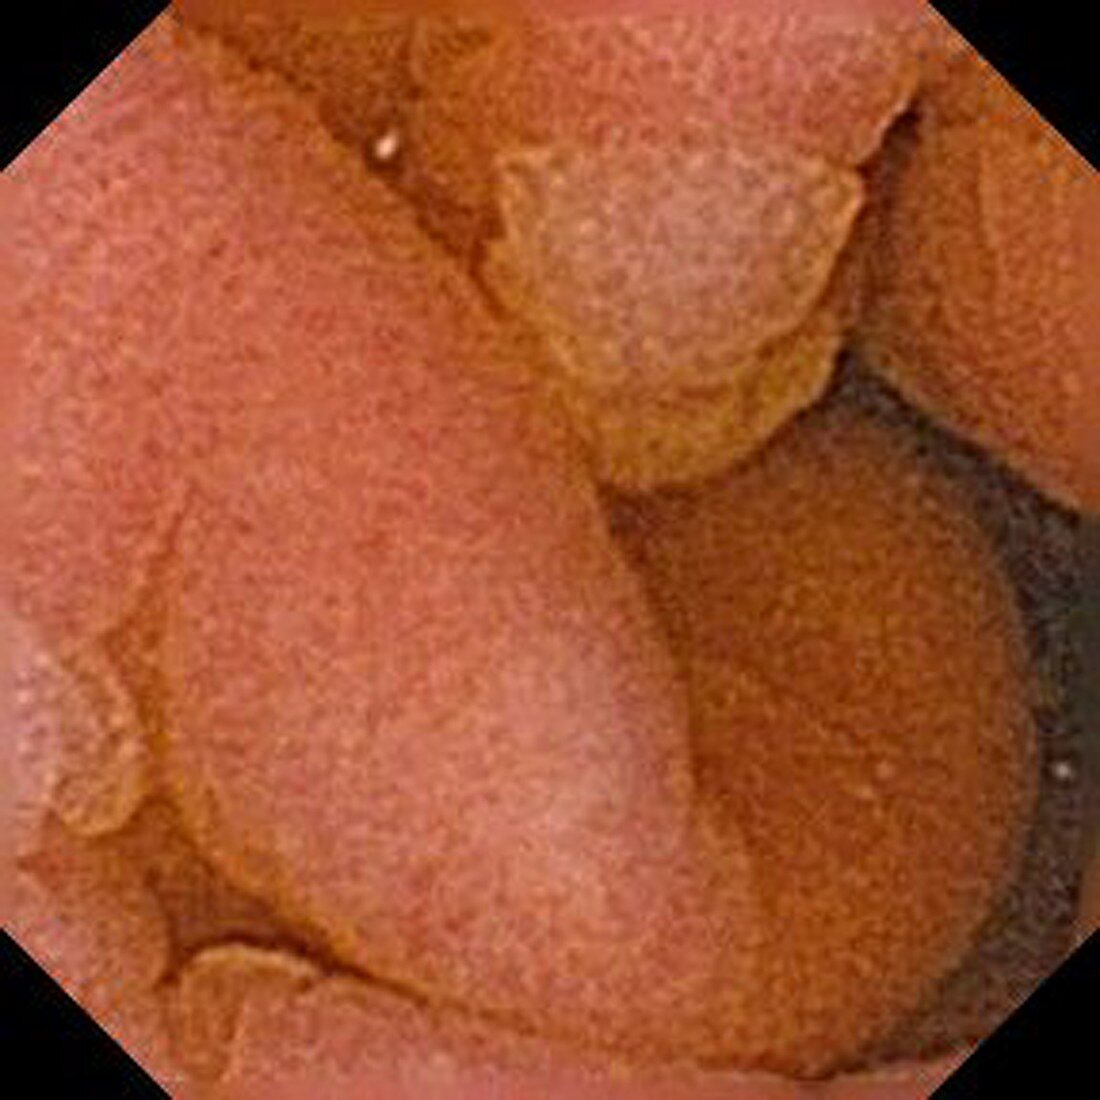 Gastric metaplasia,pill camera view